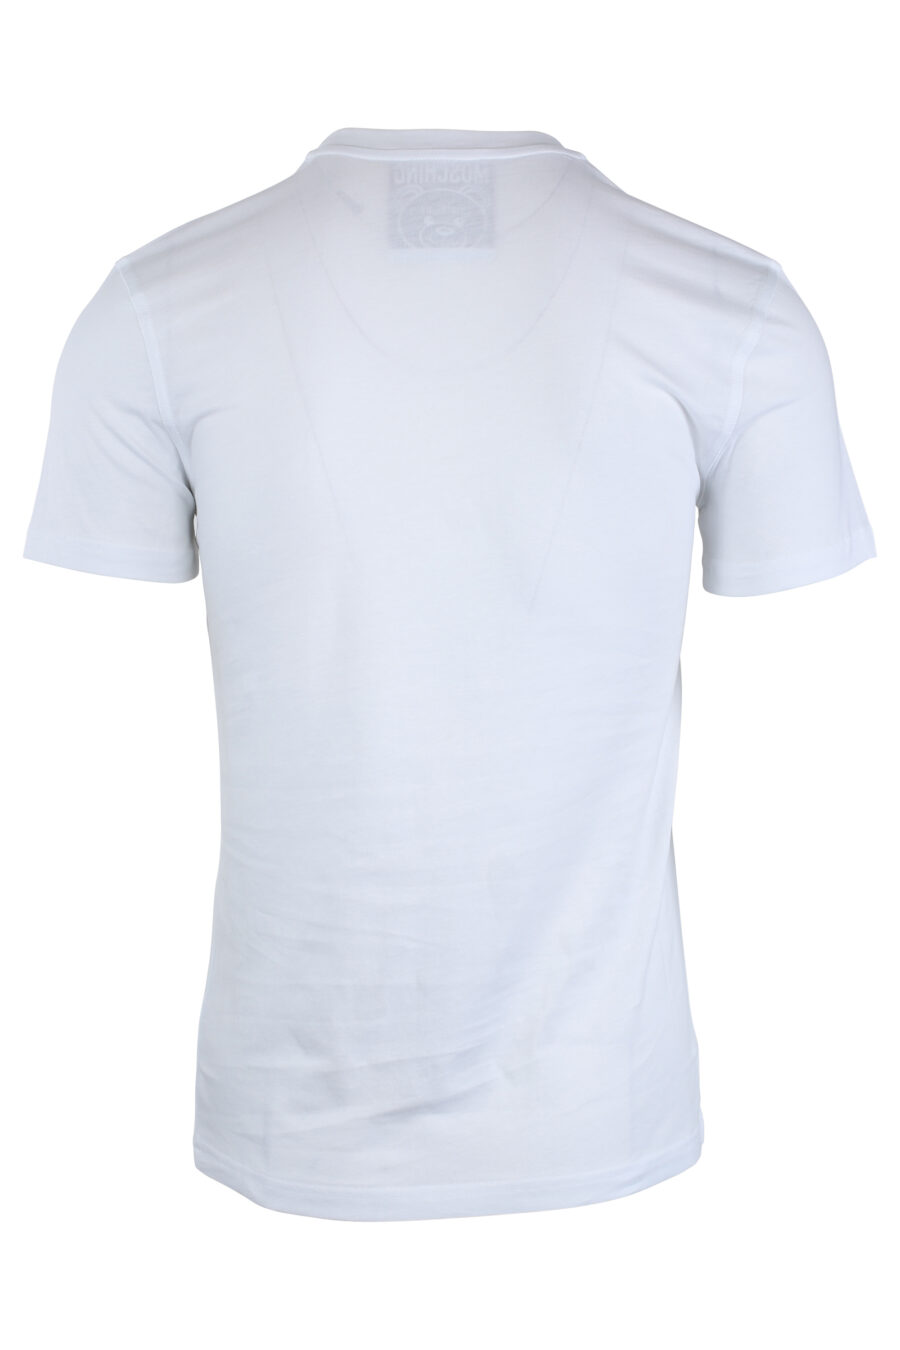 Camiseta blanca con maxilogo oso monocromático - IMG 1654